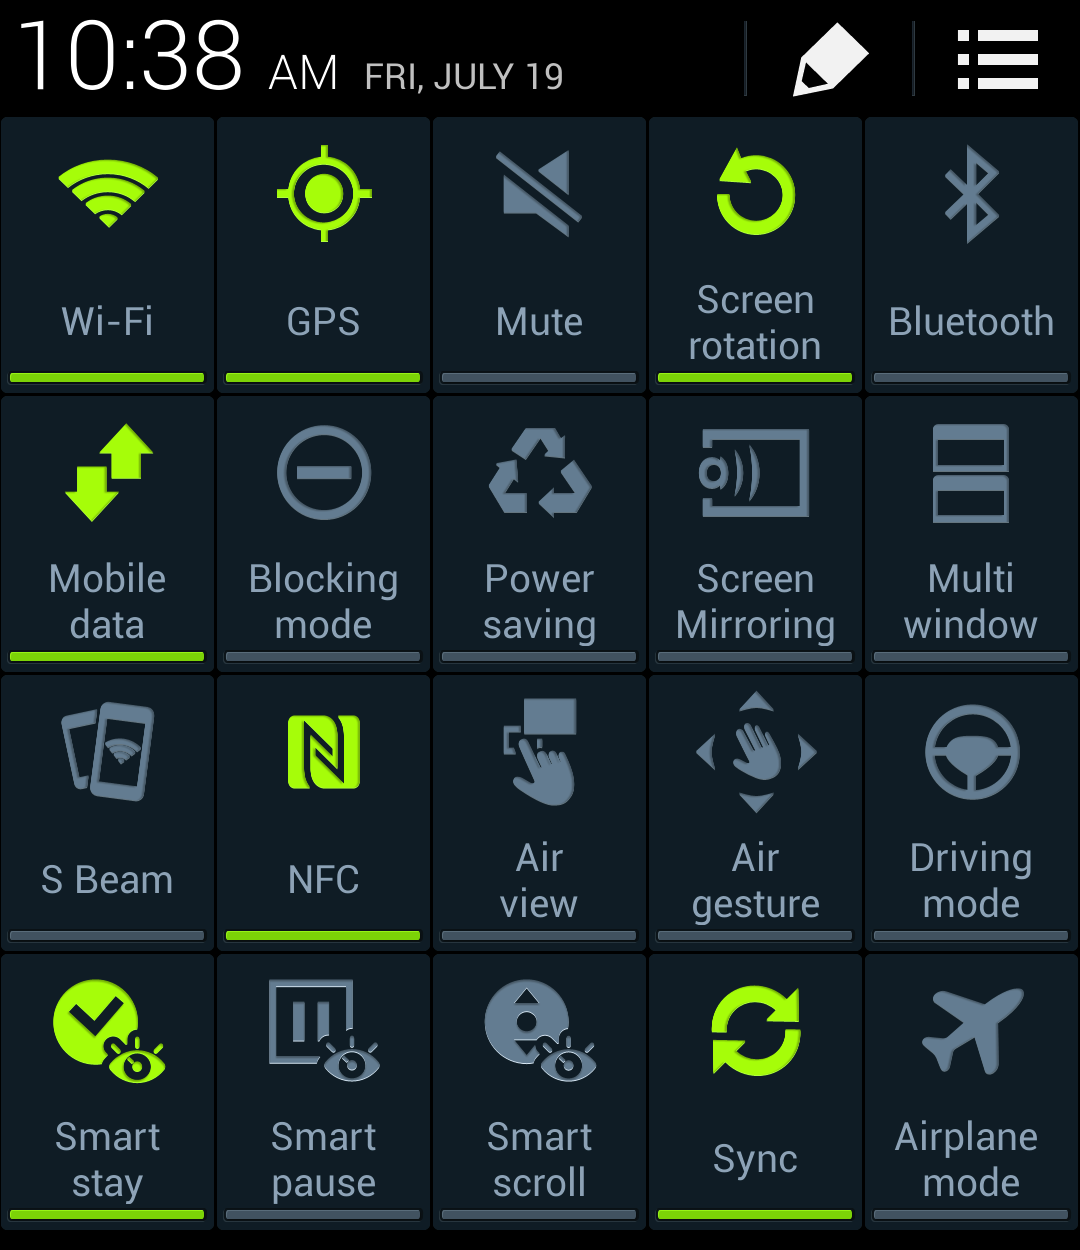 Samsung Galaxy s3 icons. Значок интернета на телефоне андроид. Значки в смартфоне самсунг. Пиктограммы на телефоне самсунг. Samsung значки на экране